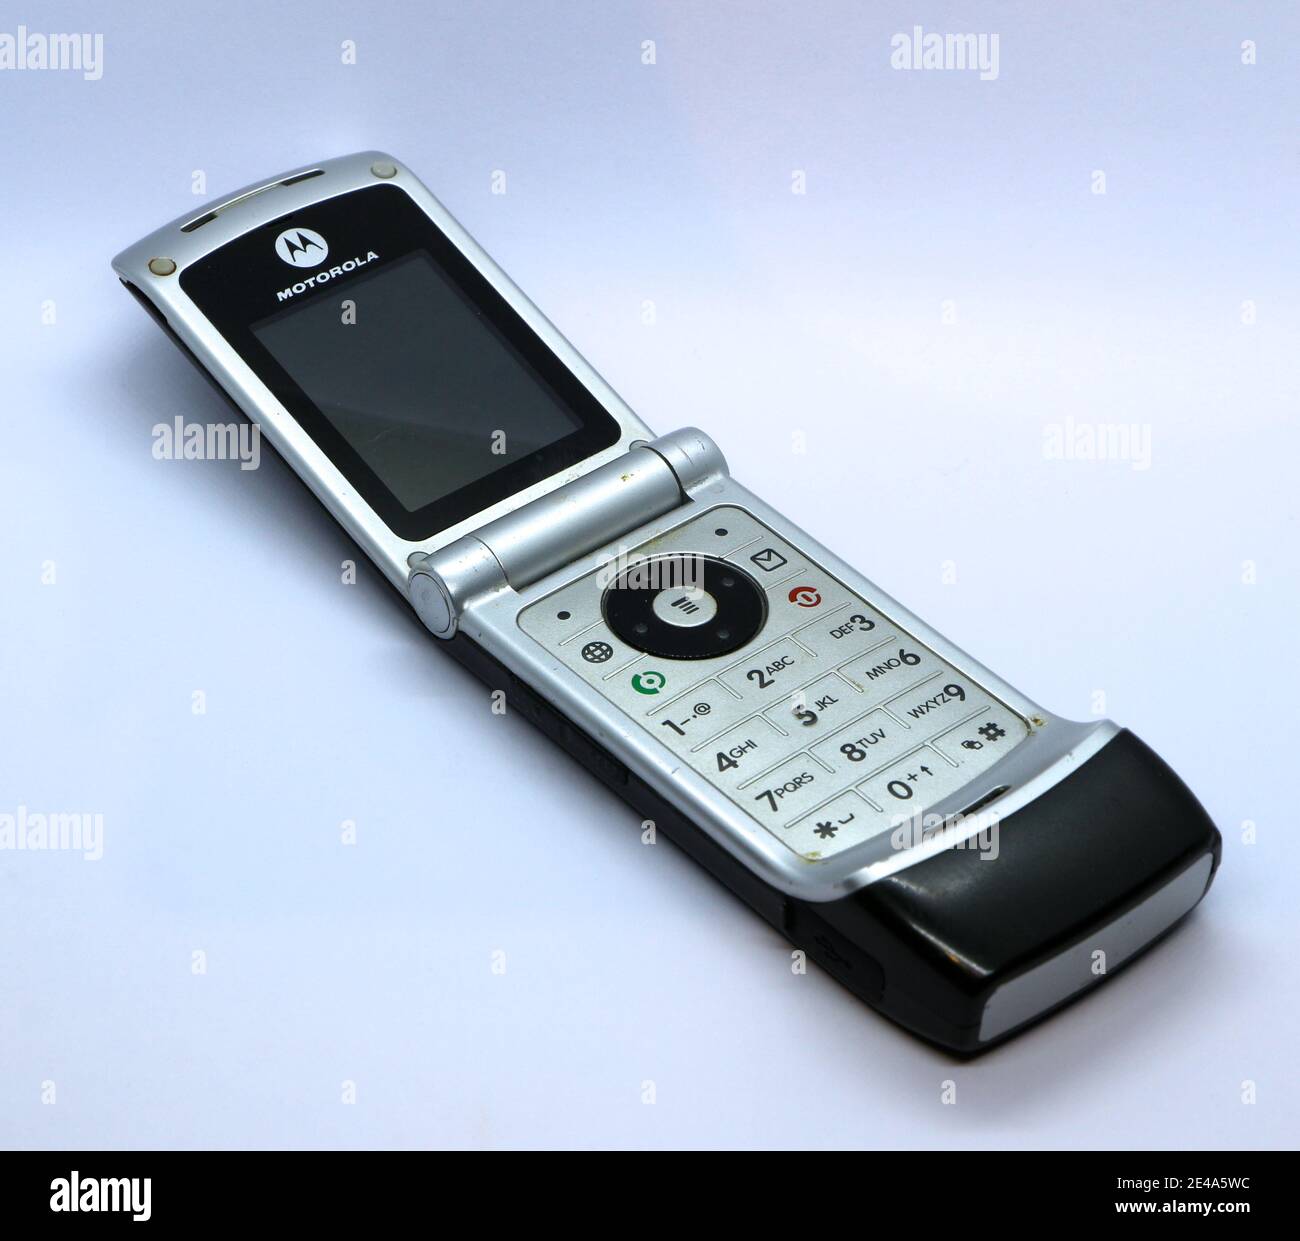 Foto eines Classic Motorola W375 Clamshell schwarz-silbernen Mobiltelefons  im Juni 2006 veröffentlicht Stockfotografie - Alamy